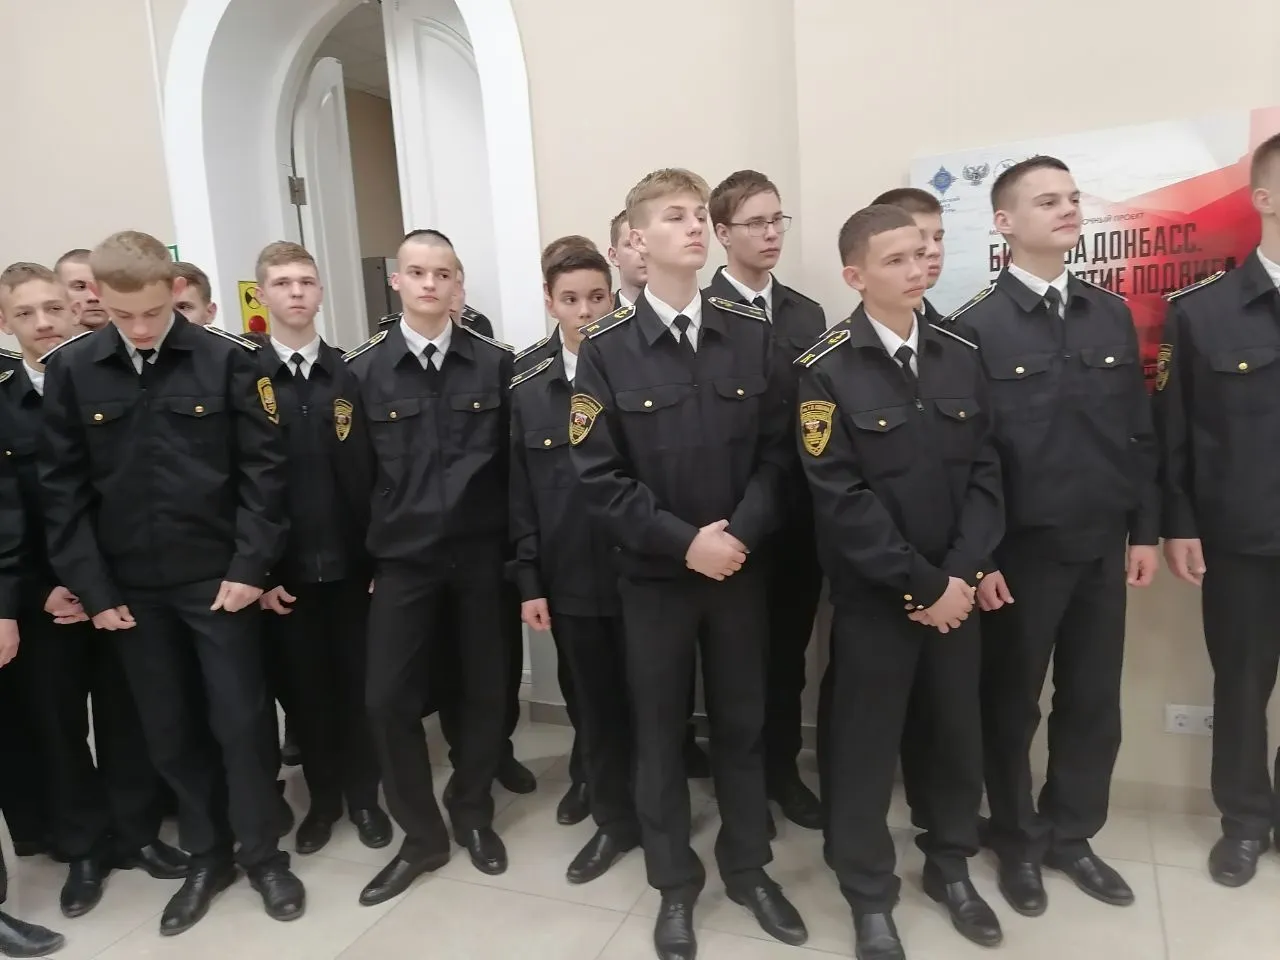 Проект «Битва за Донбасс. Бессмертие подвига» продолжил свою работу в г. Ростов-на-Дону 